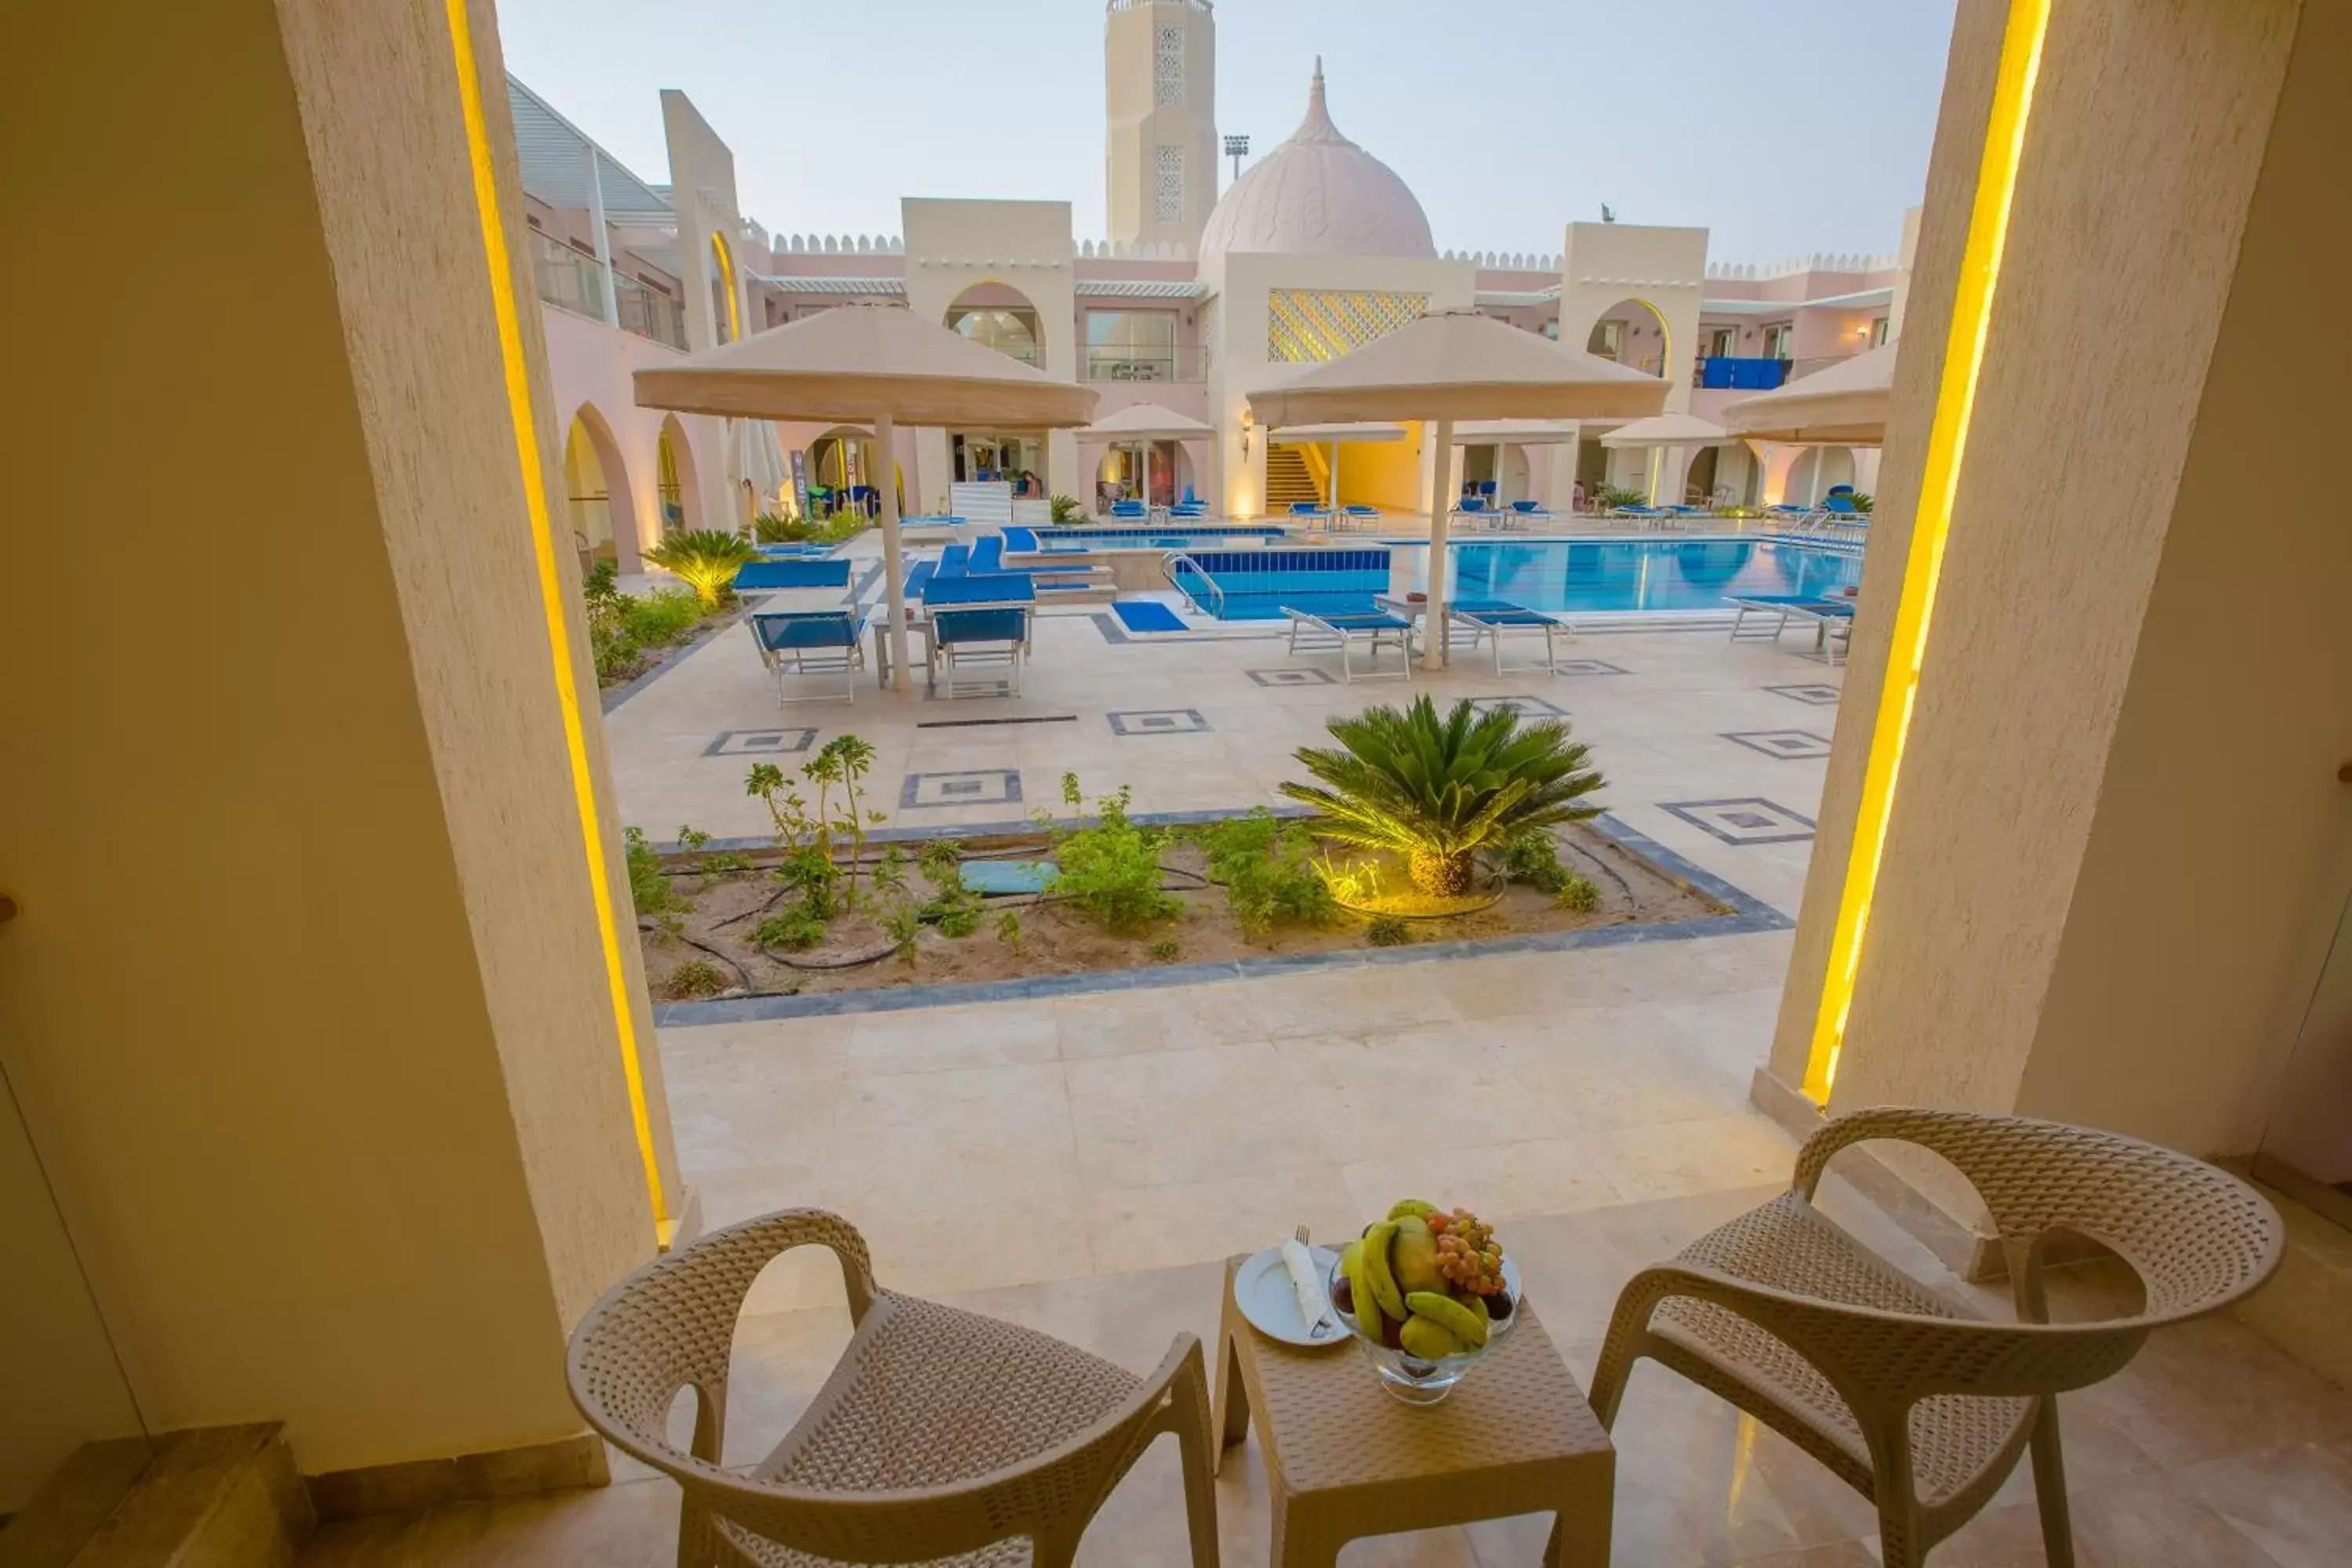 Seating area, Pool View in Pickalbatros Jungle Aqua Park - Neverland Hurghada